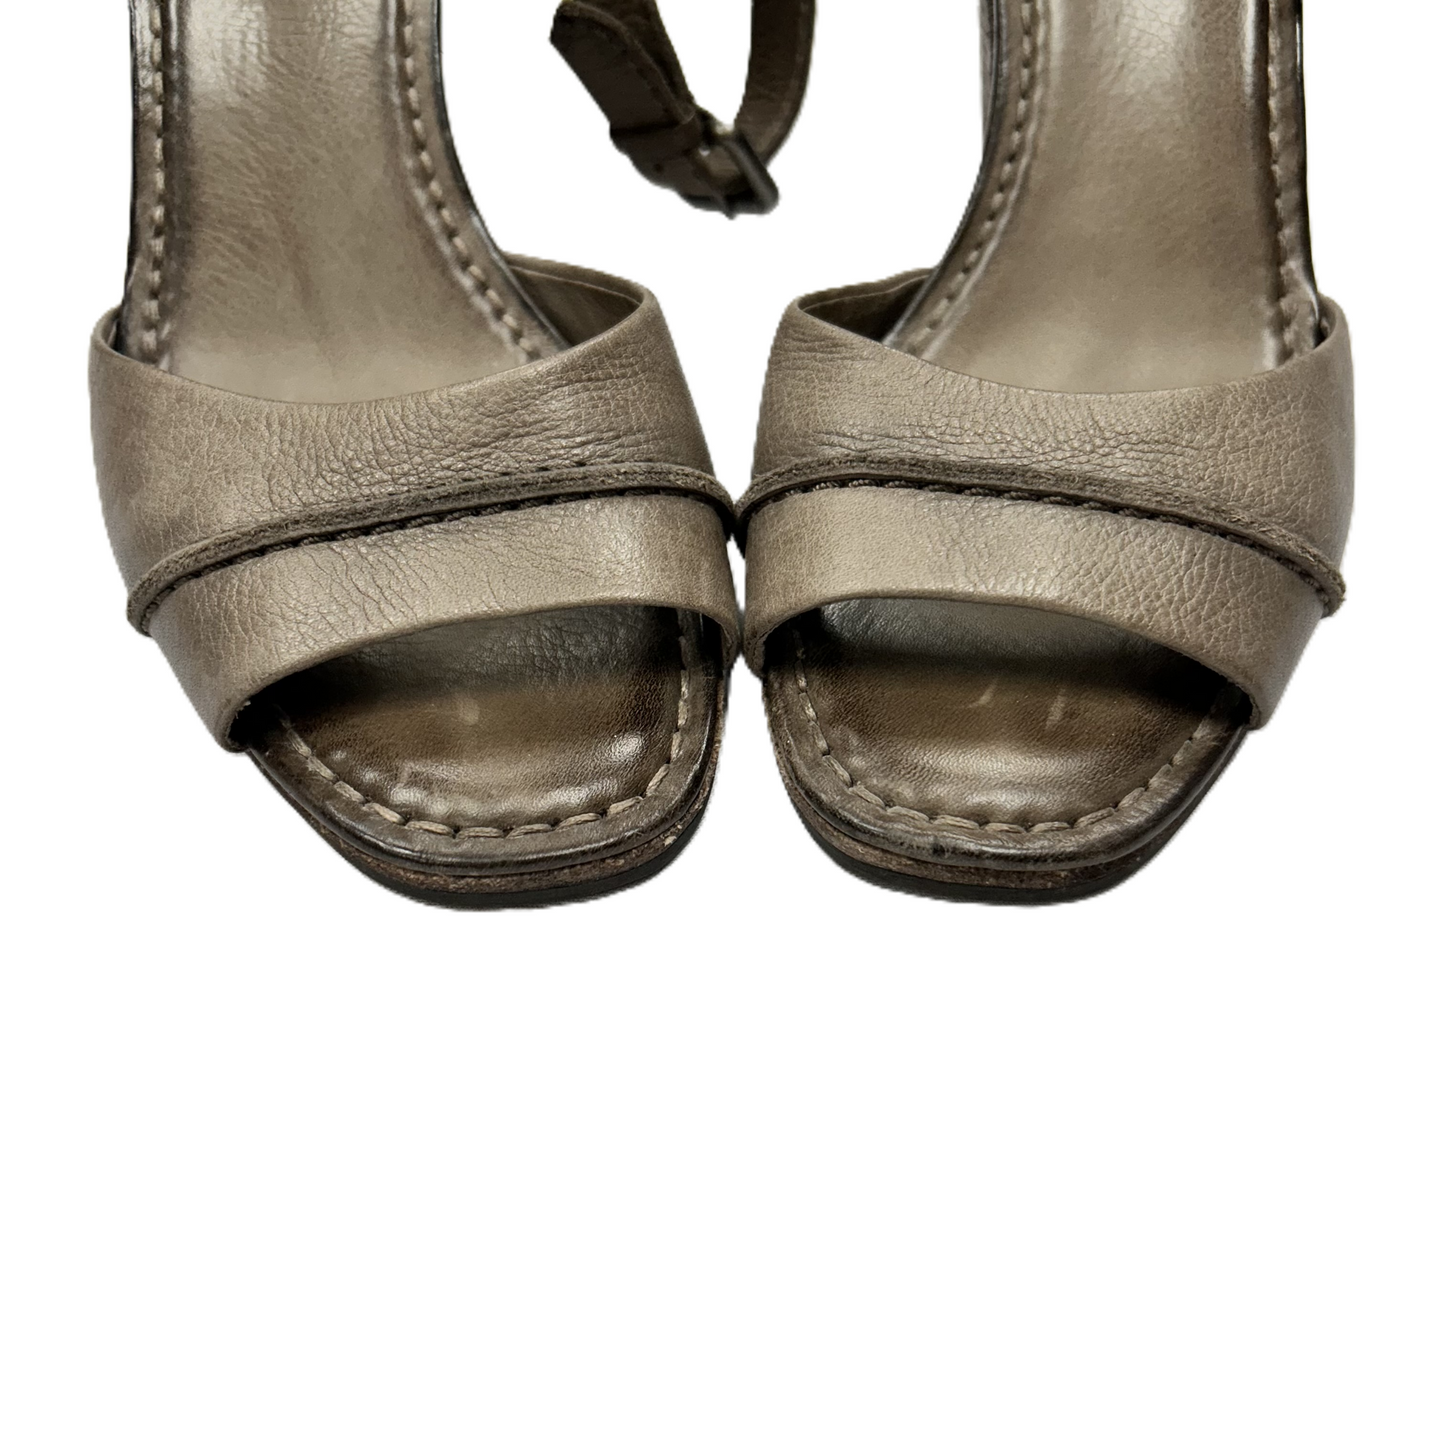 Sandals Heels Block By Frye  Size: 9